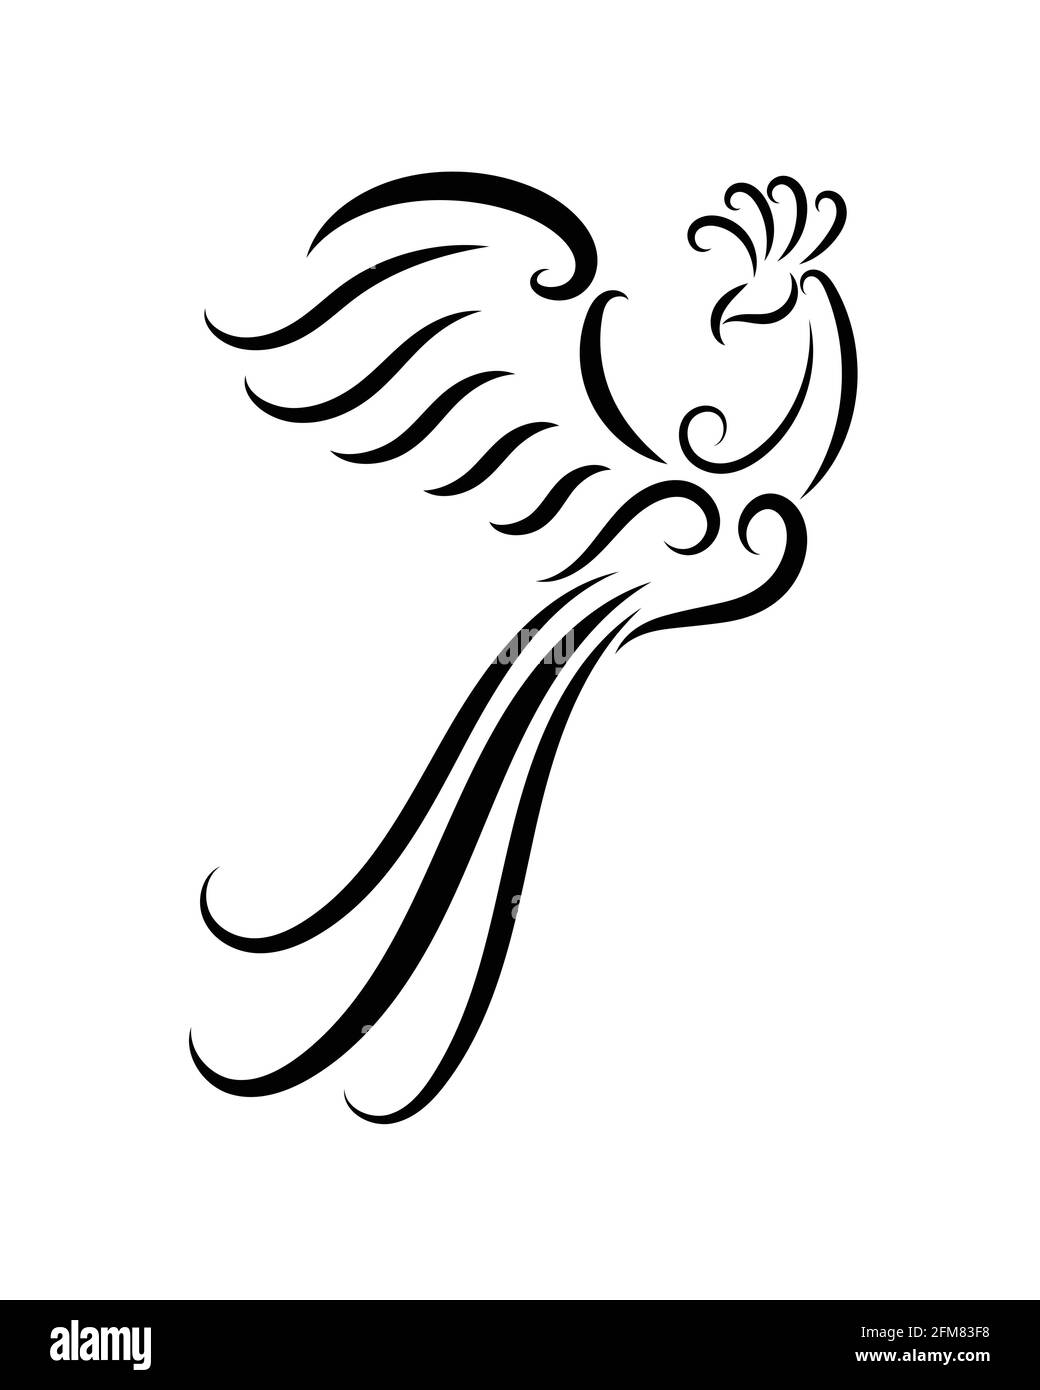 Linea bianca e nera arte di phoenix uccello con belle ali. Ricci decorazione ornamento floreale. Buon uso per simbolo, mascotte, icona, avatar, tatuaggio, T S Illustrazione Vettoriale